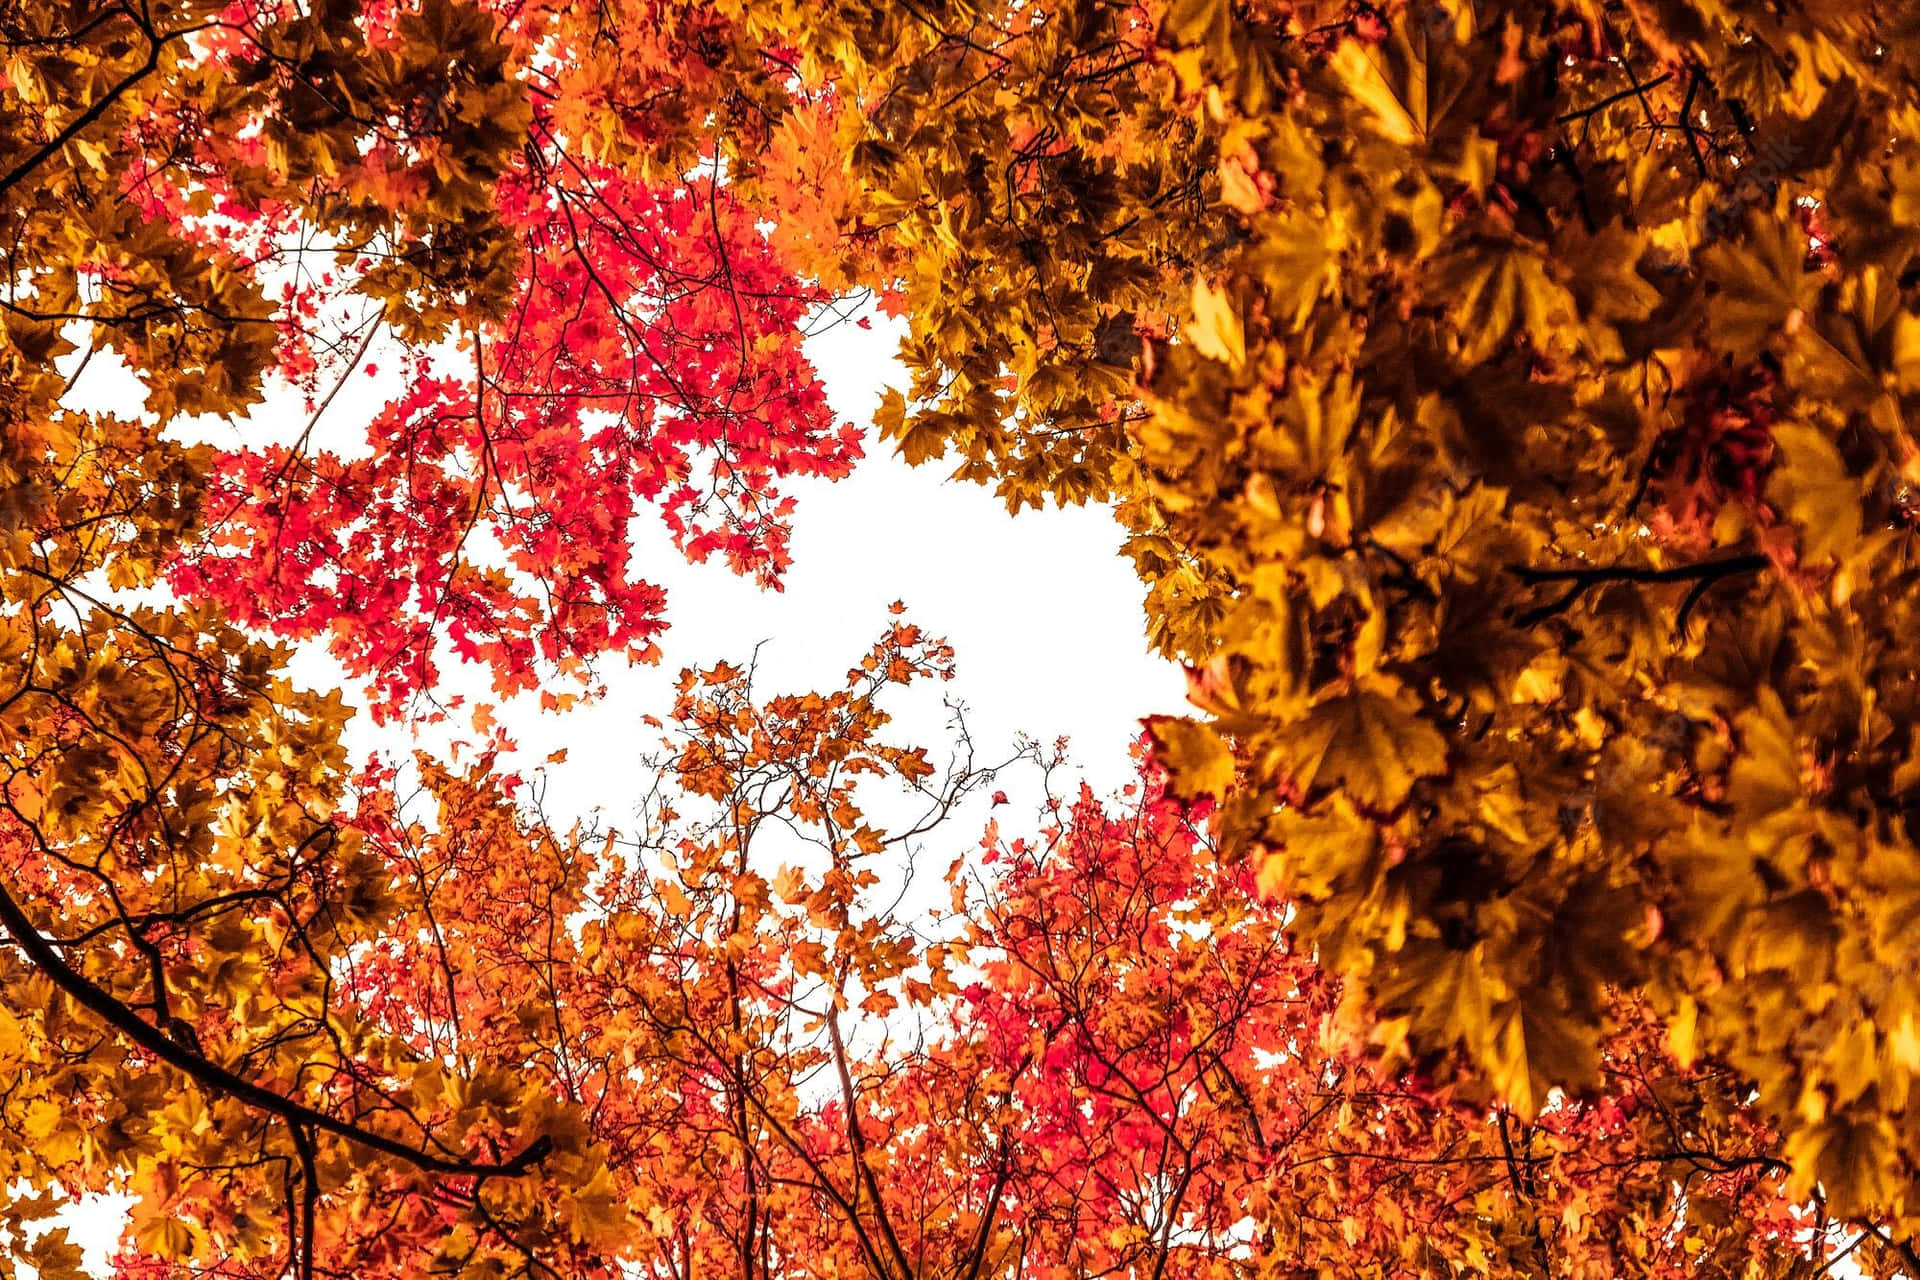 Nyd de smukke farver fra efteråret lagt ovenpå det rustikke udtryk af gamle ting. Wallpaper